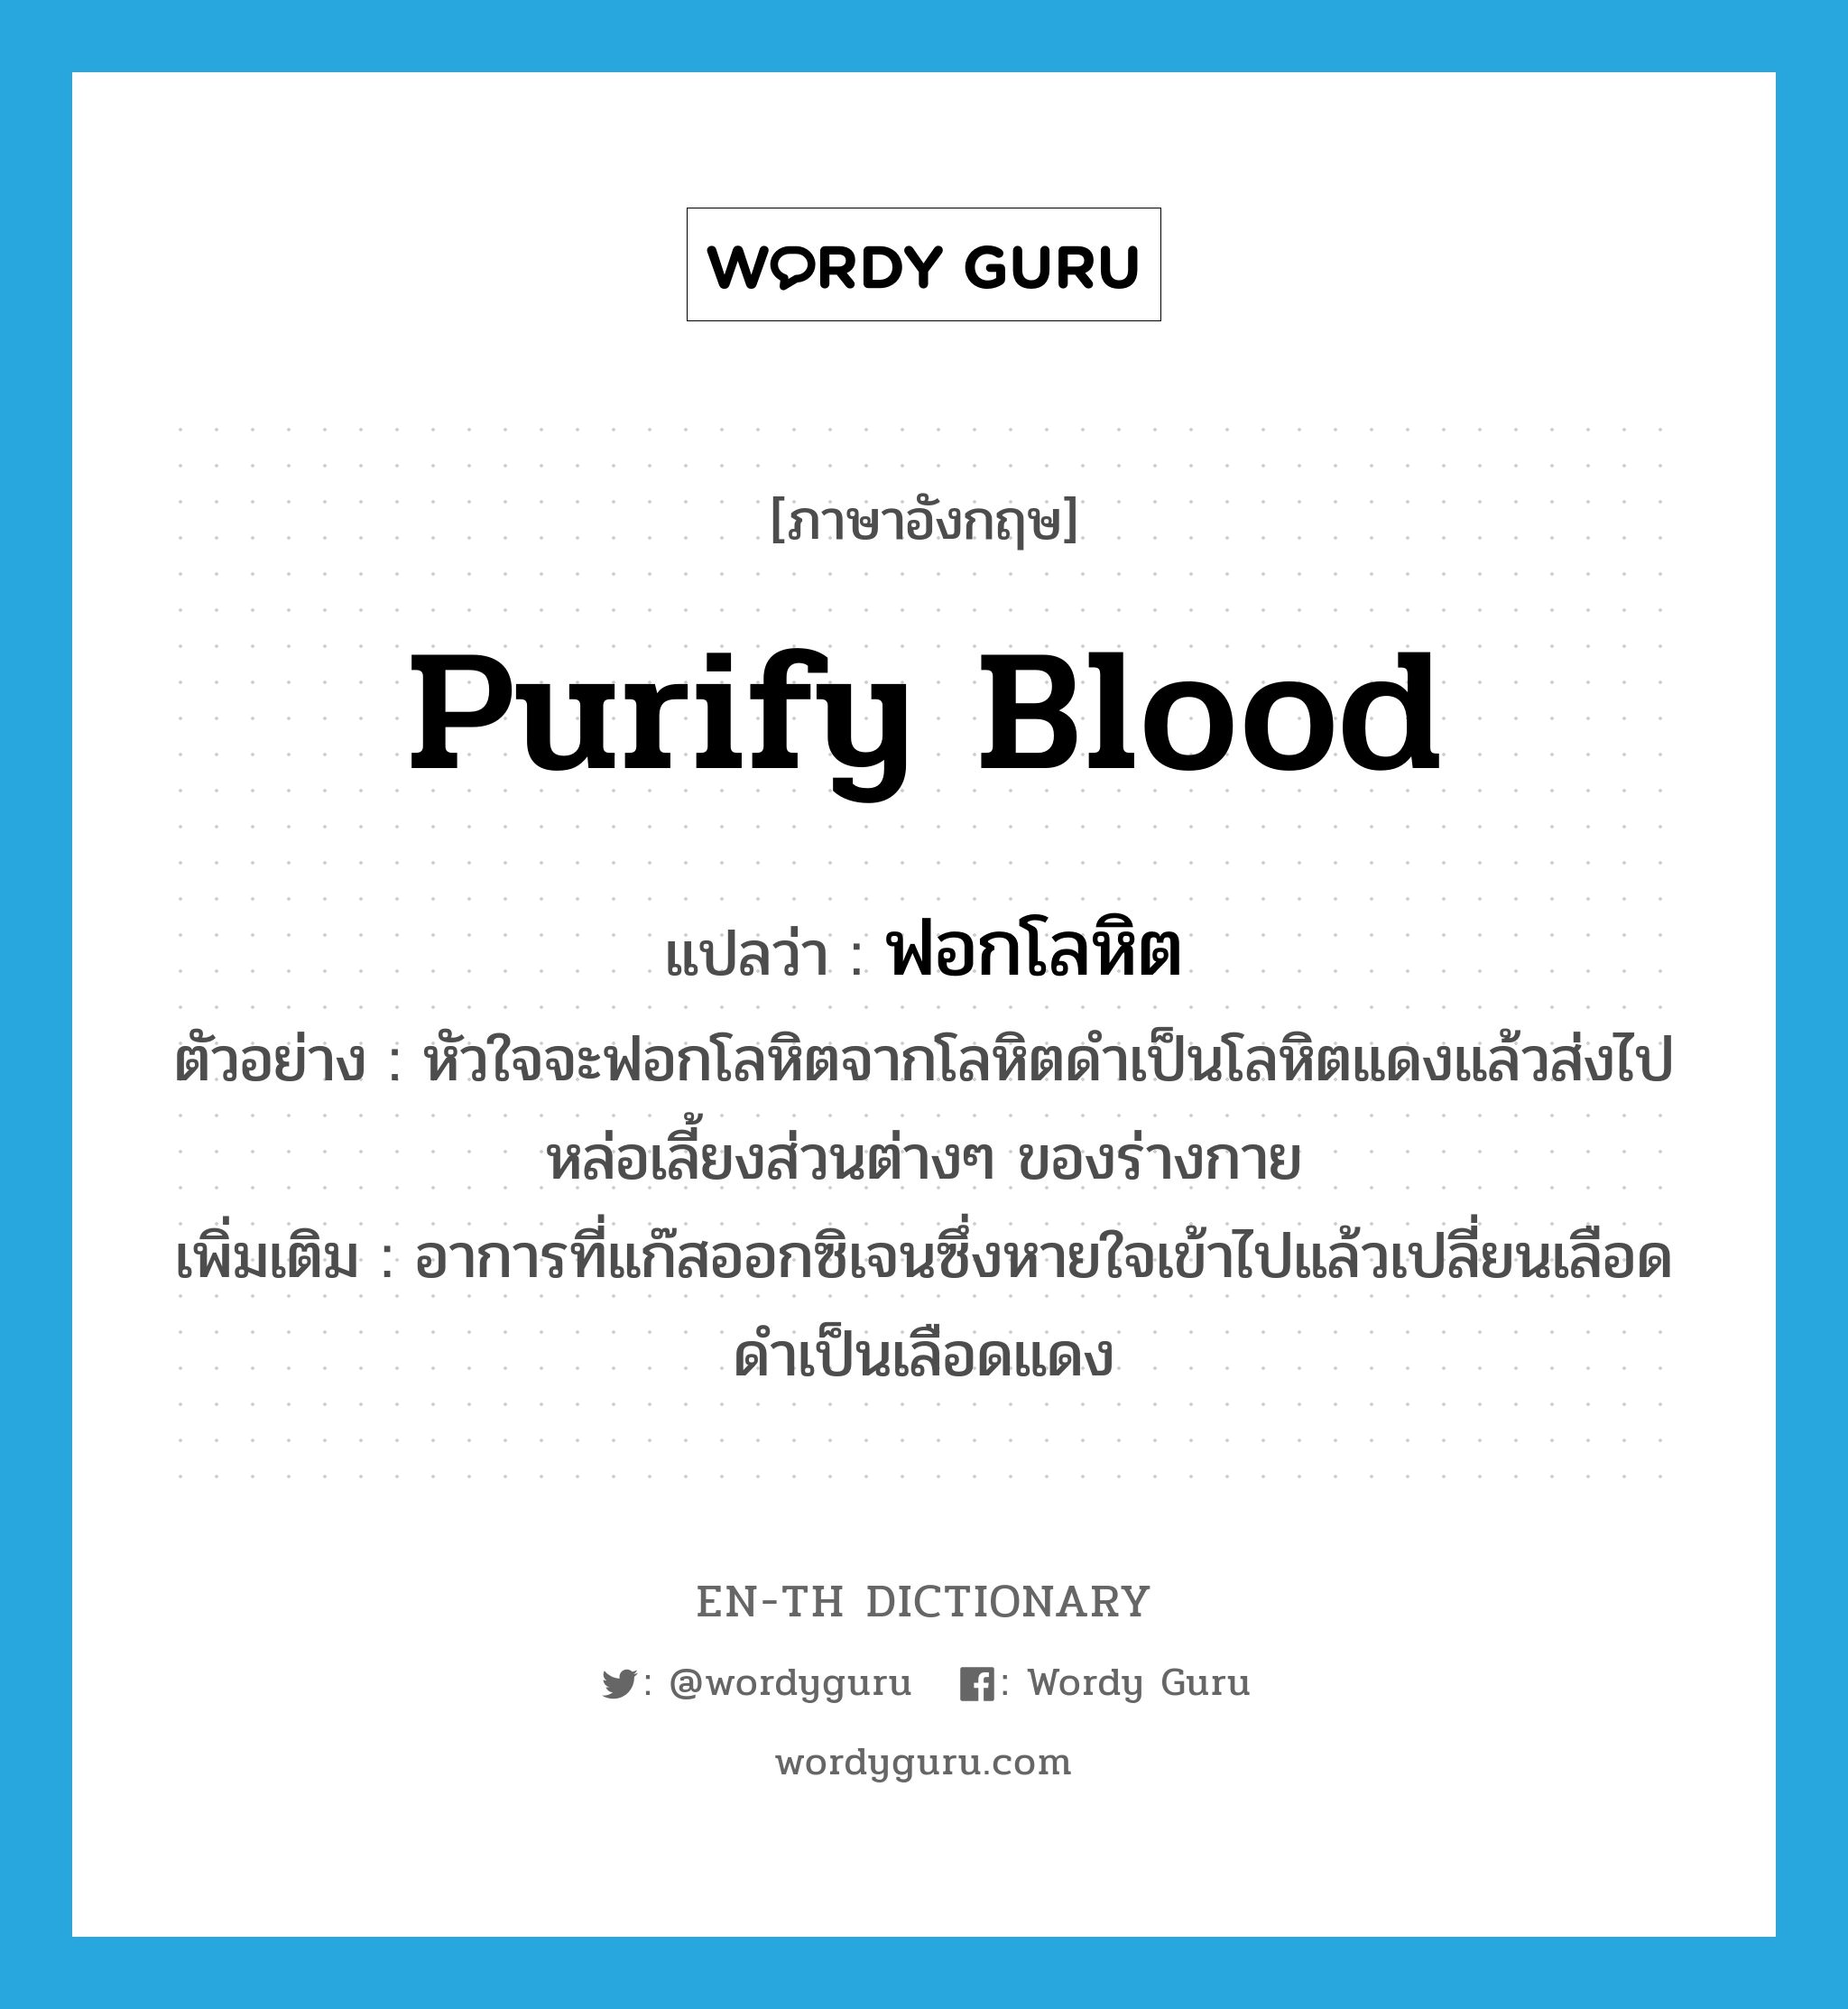 purify blood แปลว่า?, คำศัพท์ภาษาอังกฤษ purify blood แปลว่า ฟอกโลหิต ประเภท V ตัวอย่าง หัวใจจะฟอกโลหิตจากโลหิตดำเป็นโลหิตแดงแล้วส่งไปหล่อเลี้ยงส่วนต่างๆ ของร่างกาย เพิ่มเติม อาการที่แก๊สออกซิเจนซึ่งหายใจเข้าไปแล้วเปลี่ยนเลือดดำเป็นเลือดแดง หมวด V